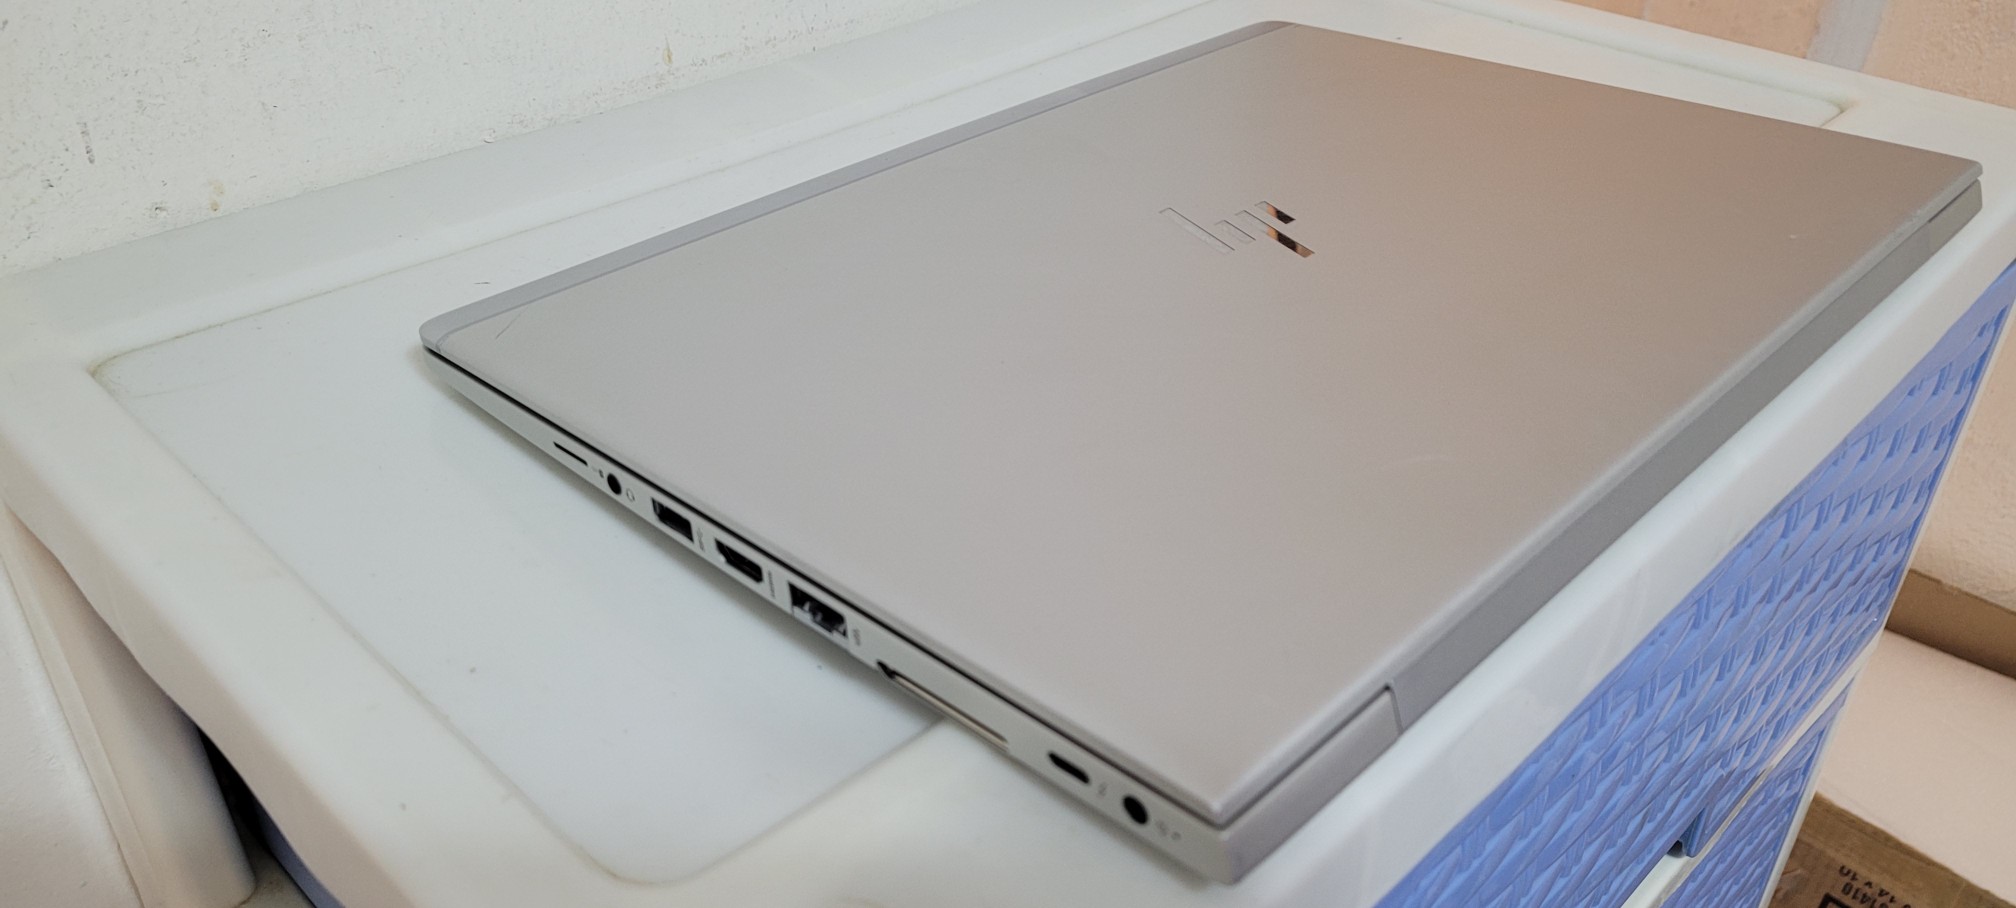 computadoras y laptops - laptop hp Slim 14 Pulg Core i5 7ma Gen Ram 8gb ddr4 Disco 256gb SSD NewNew 2